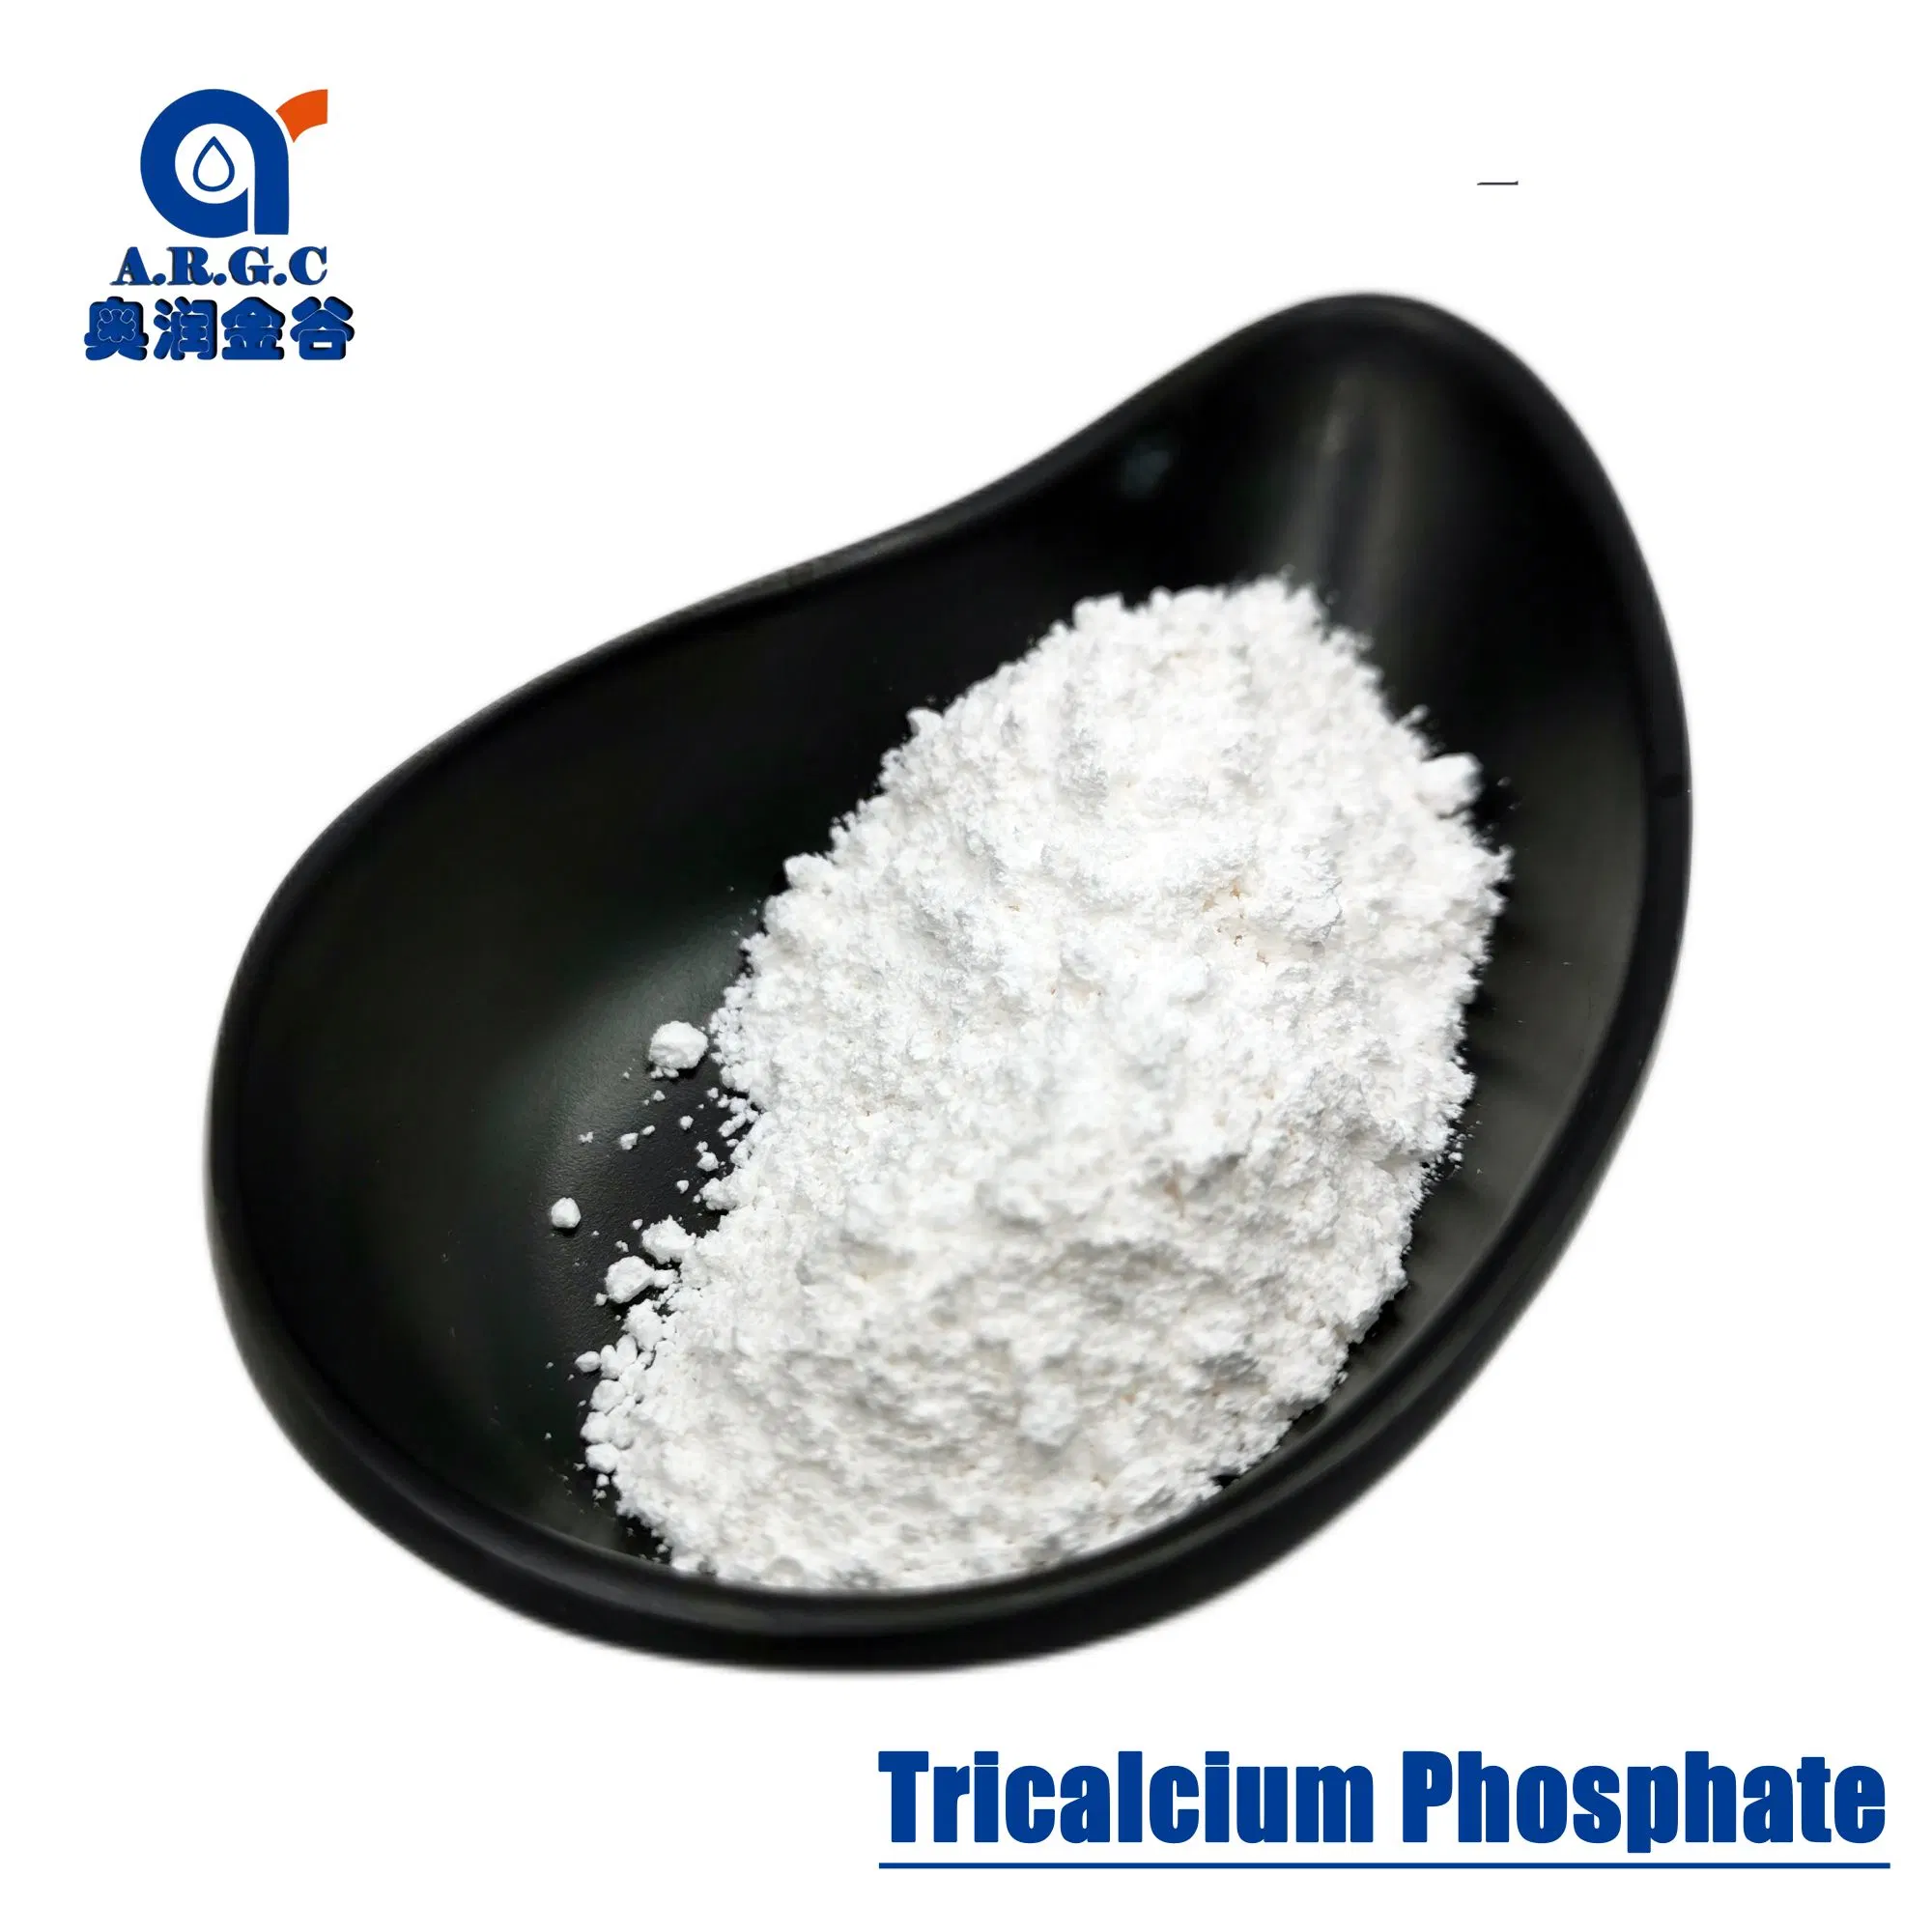 Argc Tricalcium Phosphate/Calcium Phosphate Powder CAS 7758-87-4 for Anti Caking Agent